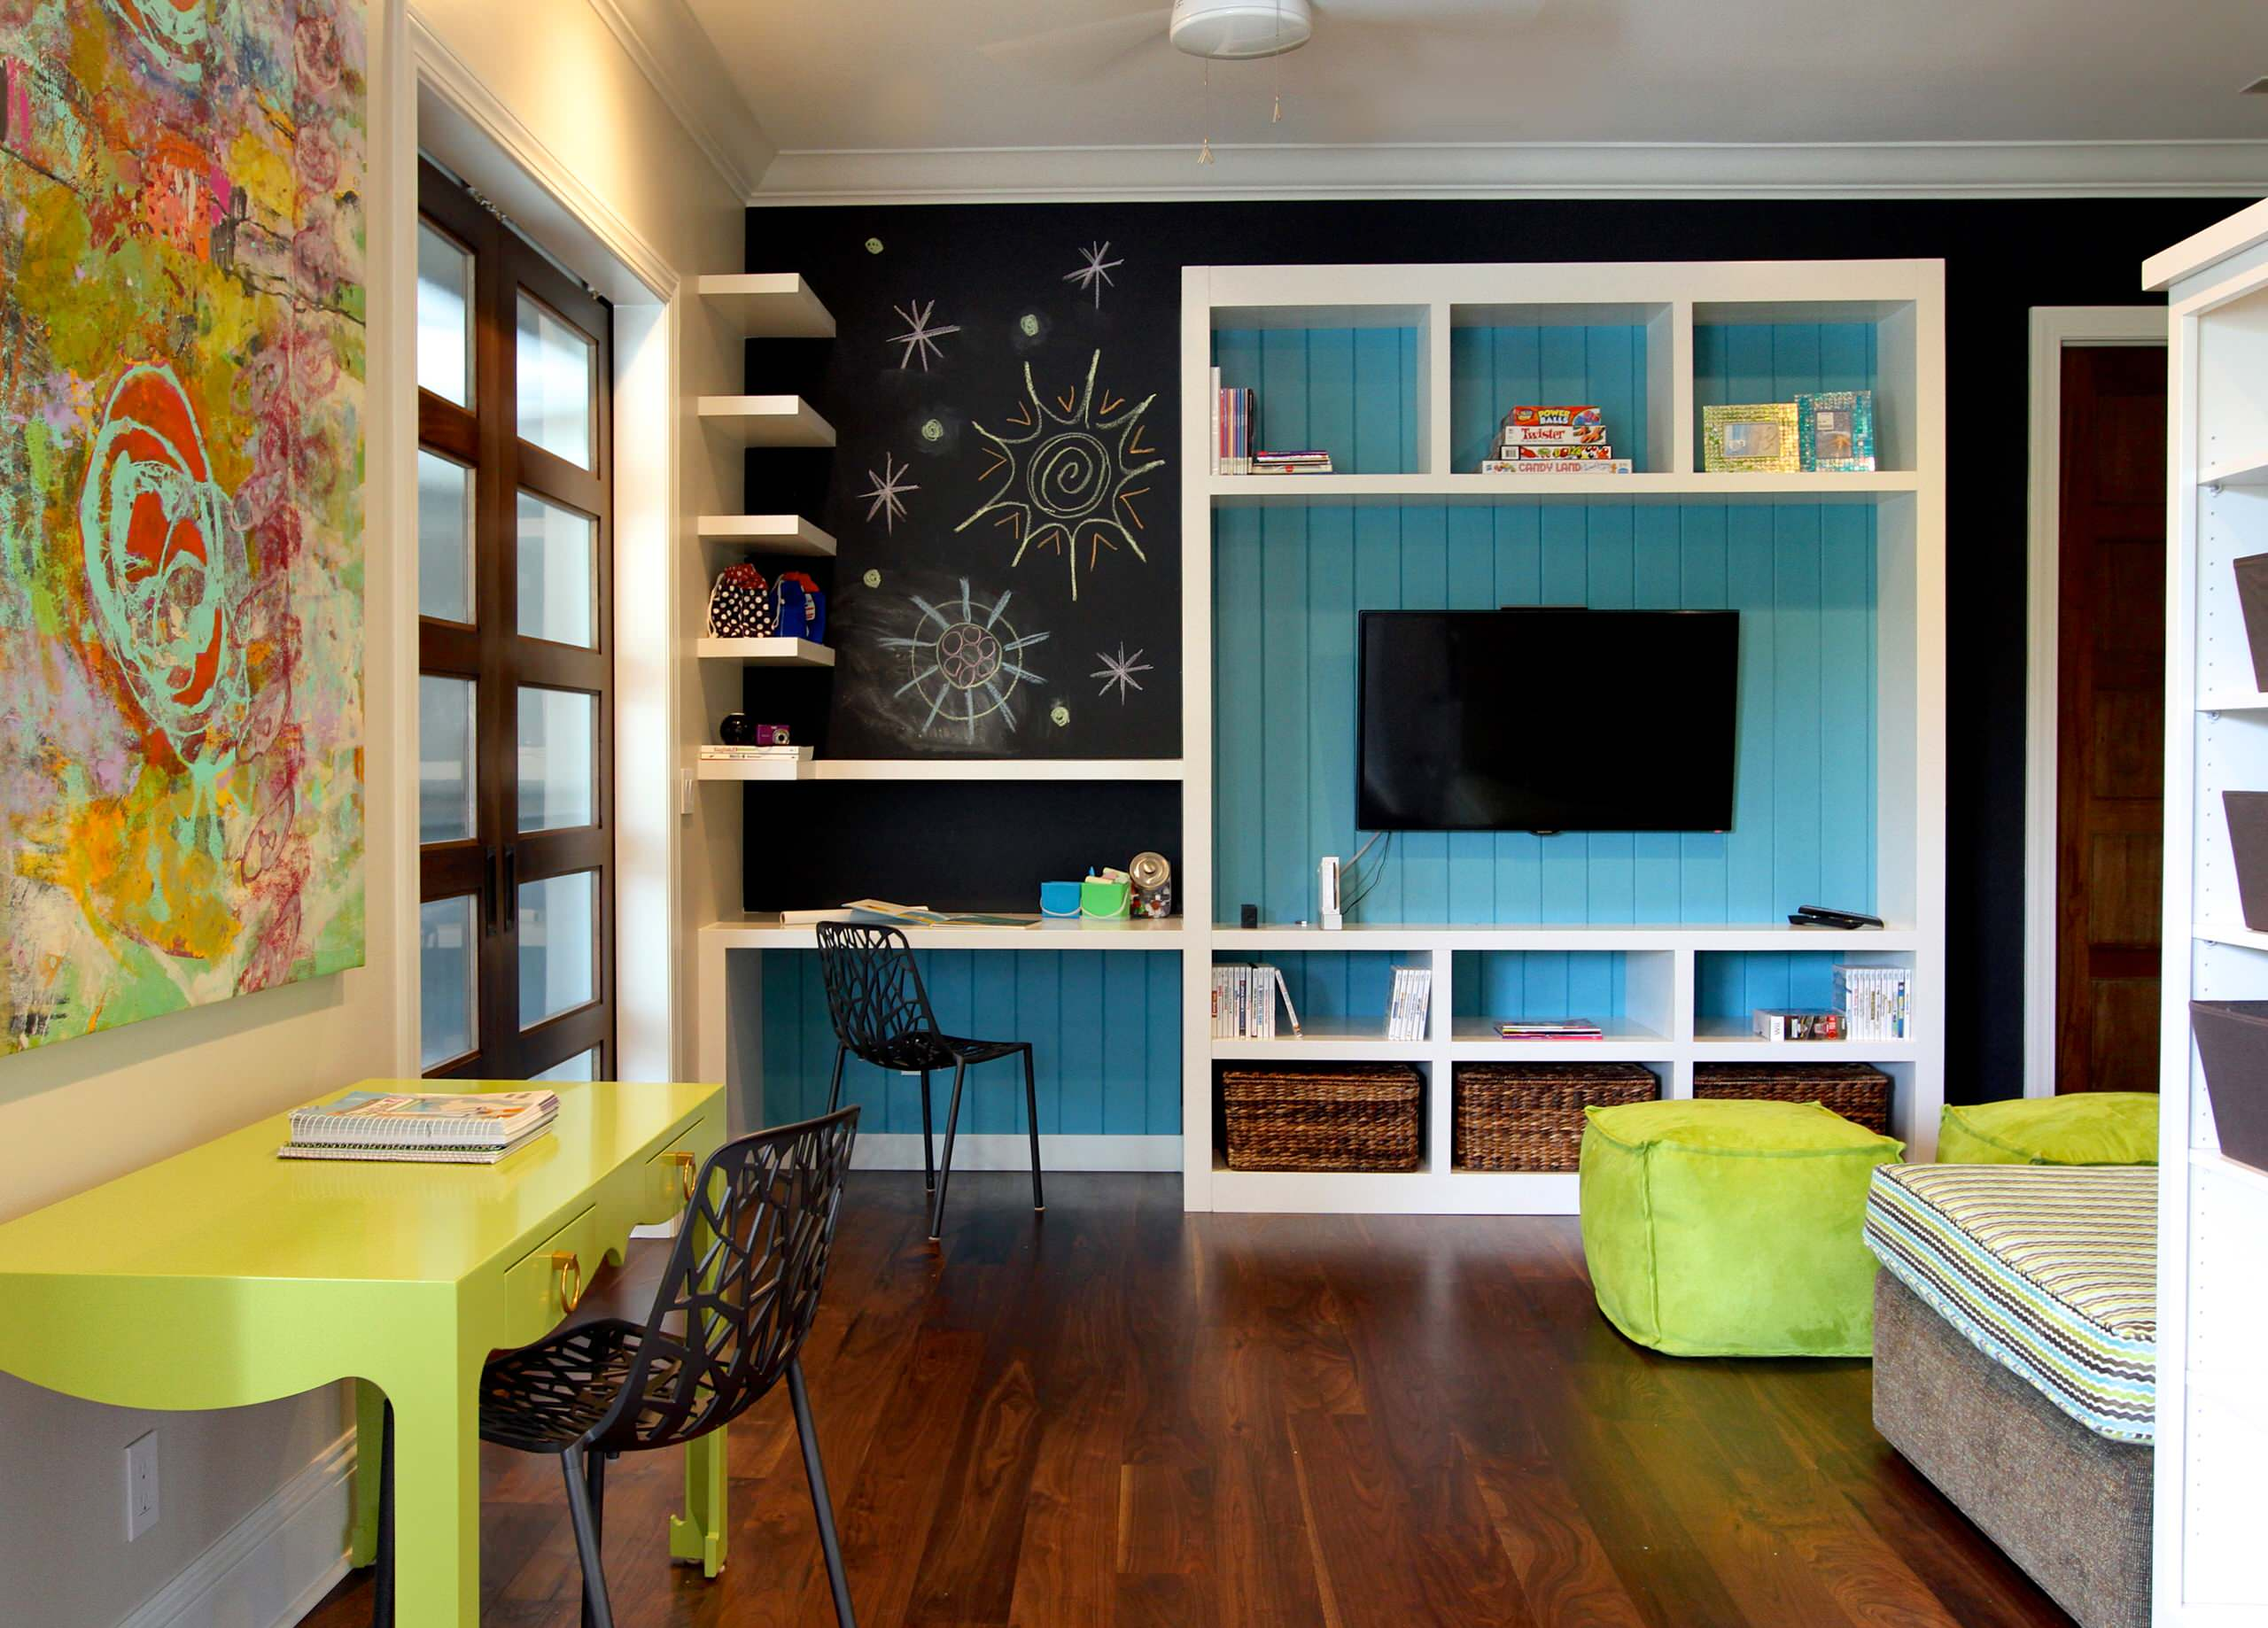 Красивое сочетание цветов в дизайне просторной детской комнаты